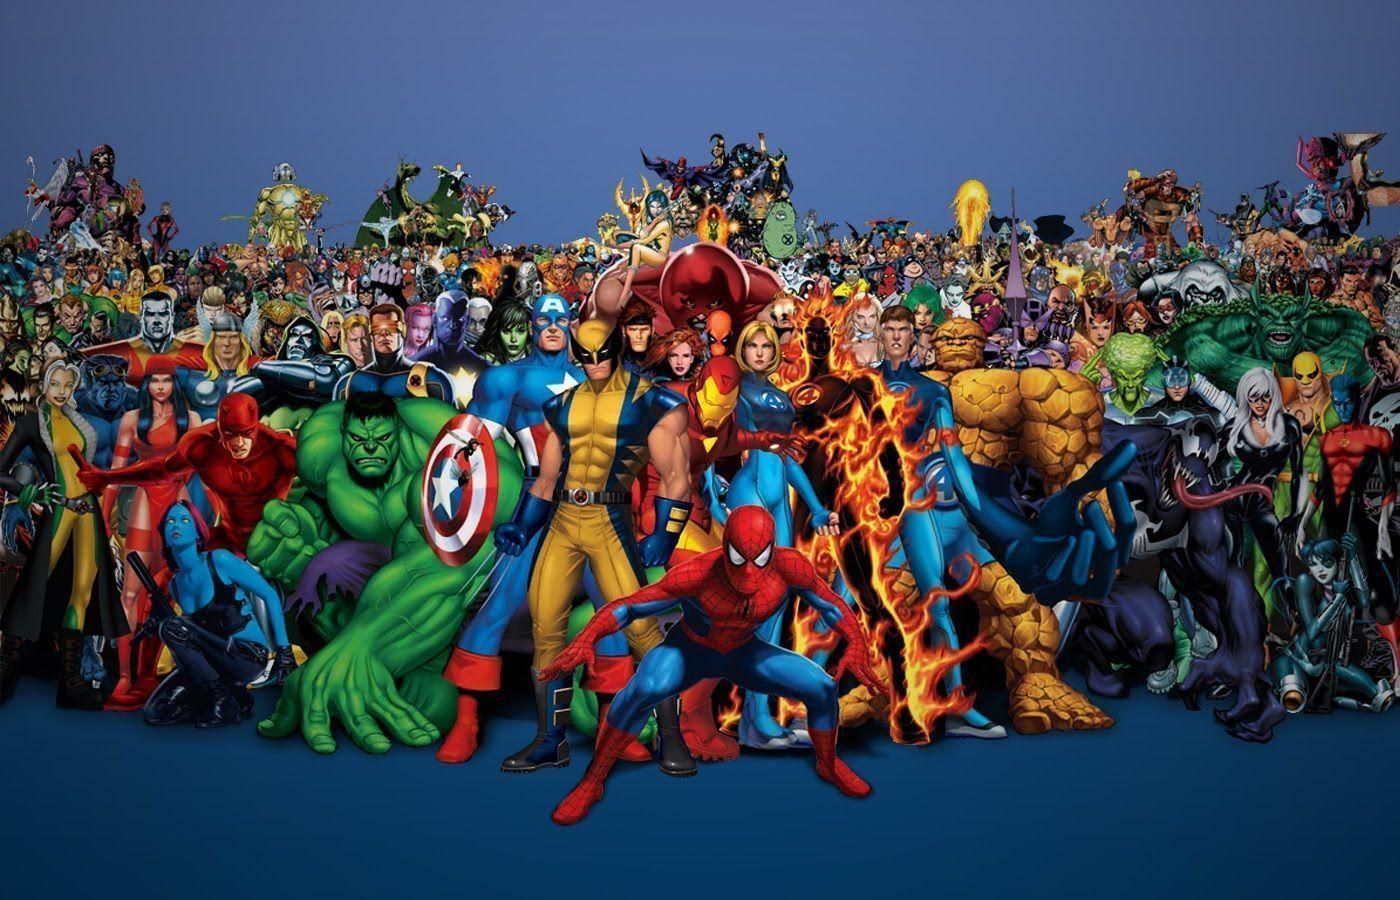 Hd Wallpaper Marvel Heroes 600 X 338 53 Kb Jpeg. HD Wallpaper